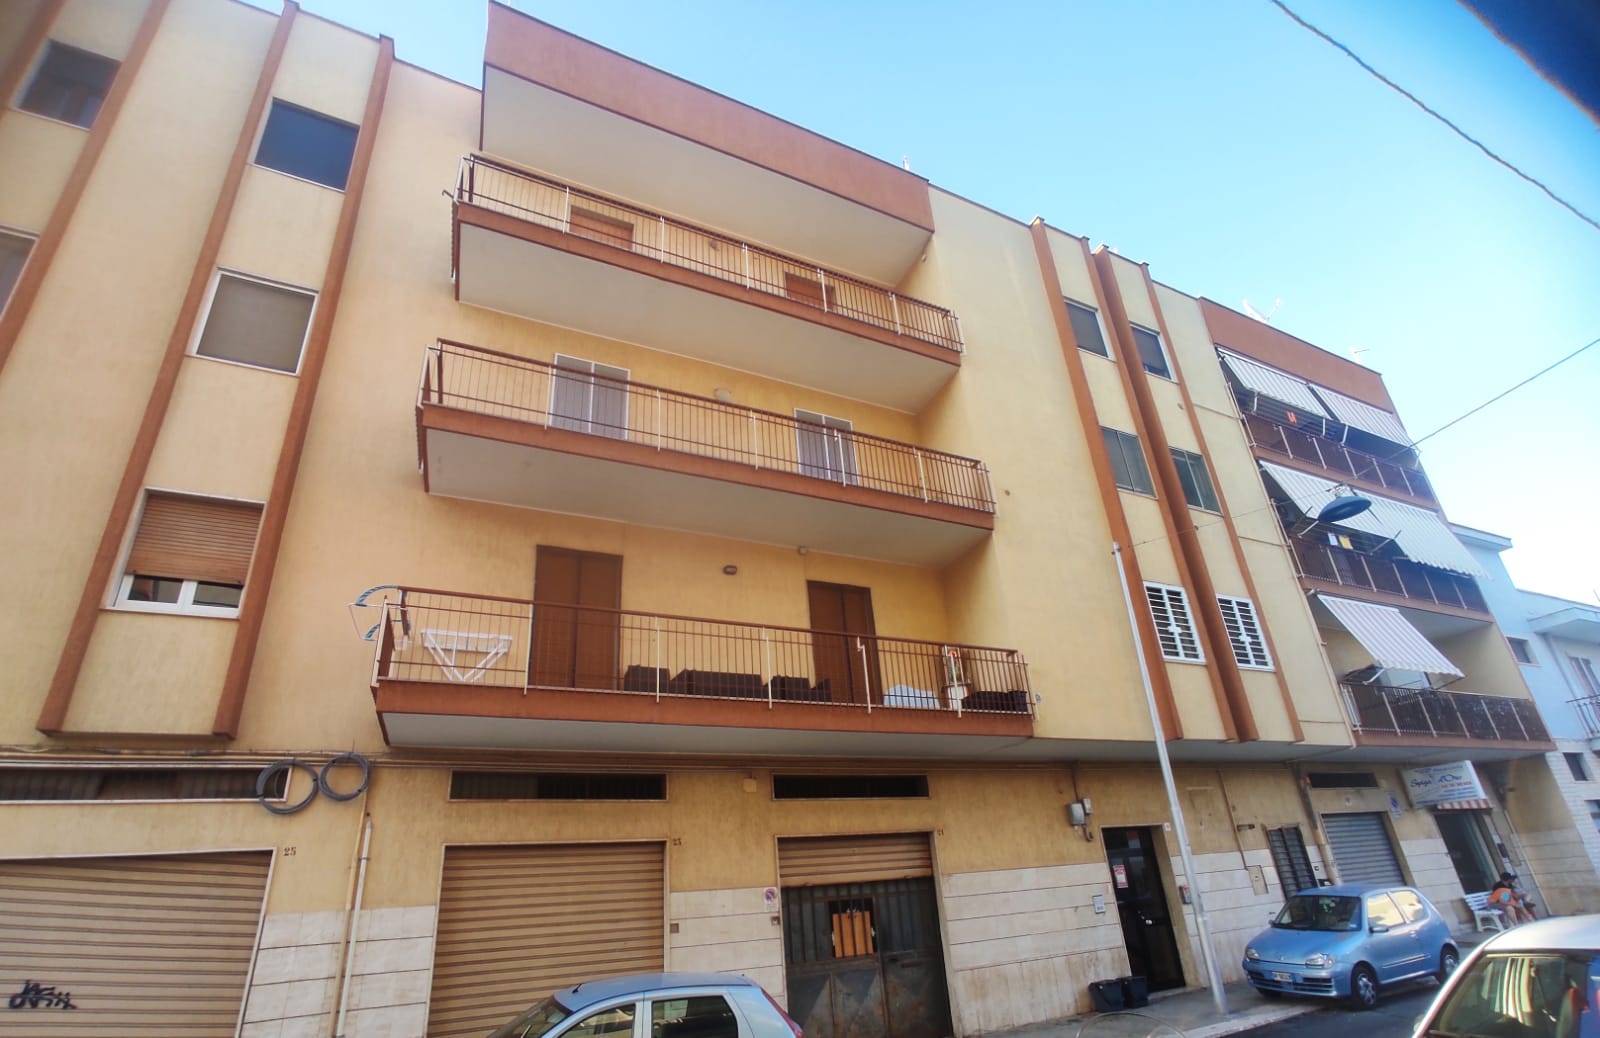 Appartamento in vendita a Modugno, 3 locali, prezzo € 125.000 | PortaleAgenzieImmobiliari.it